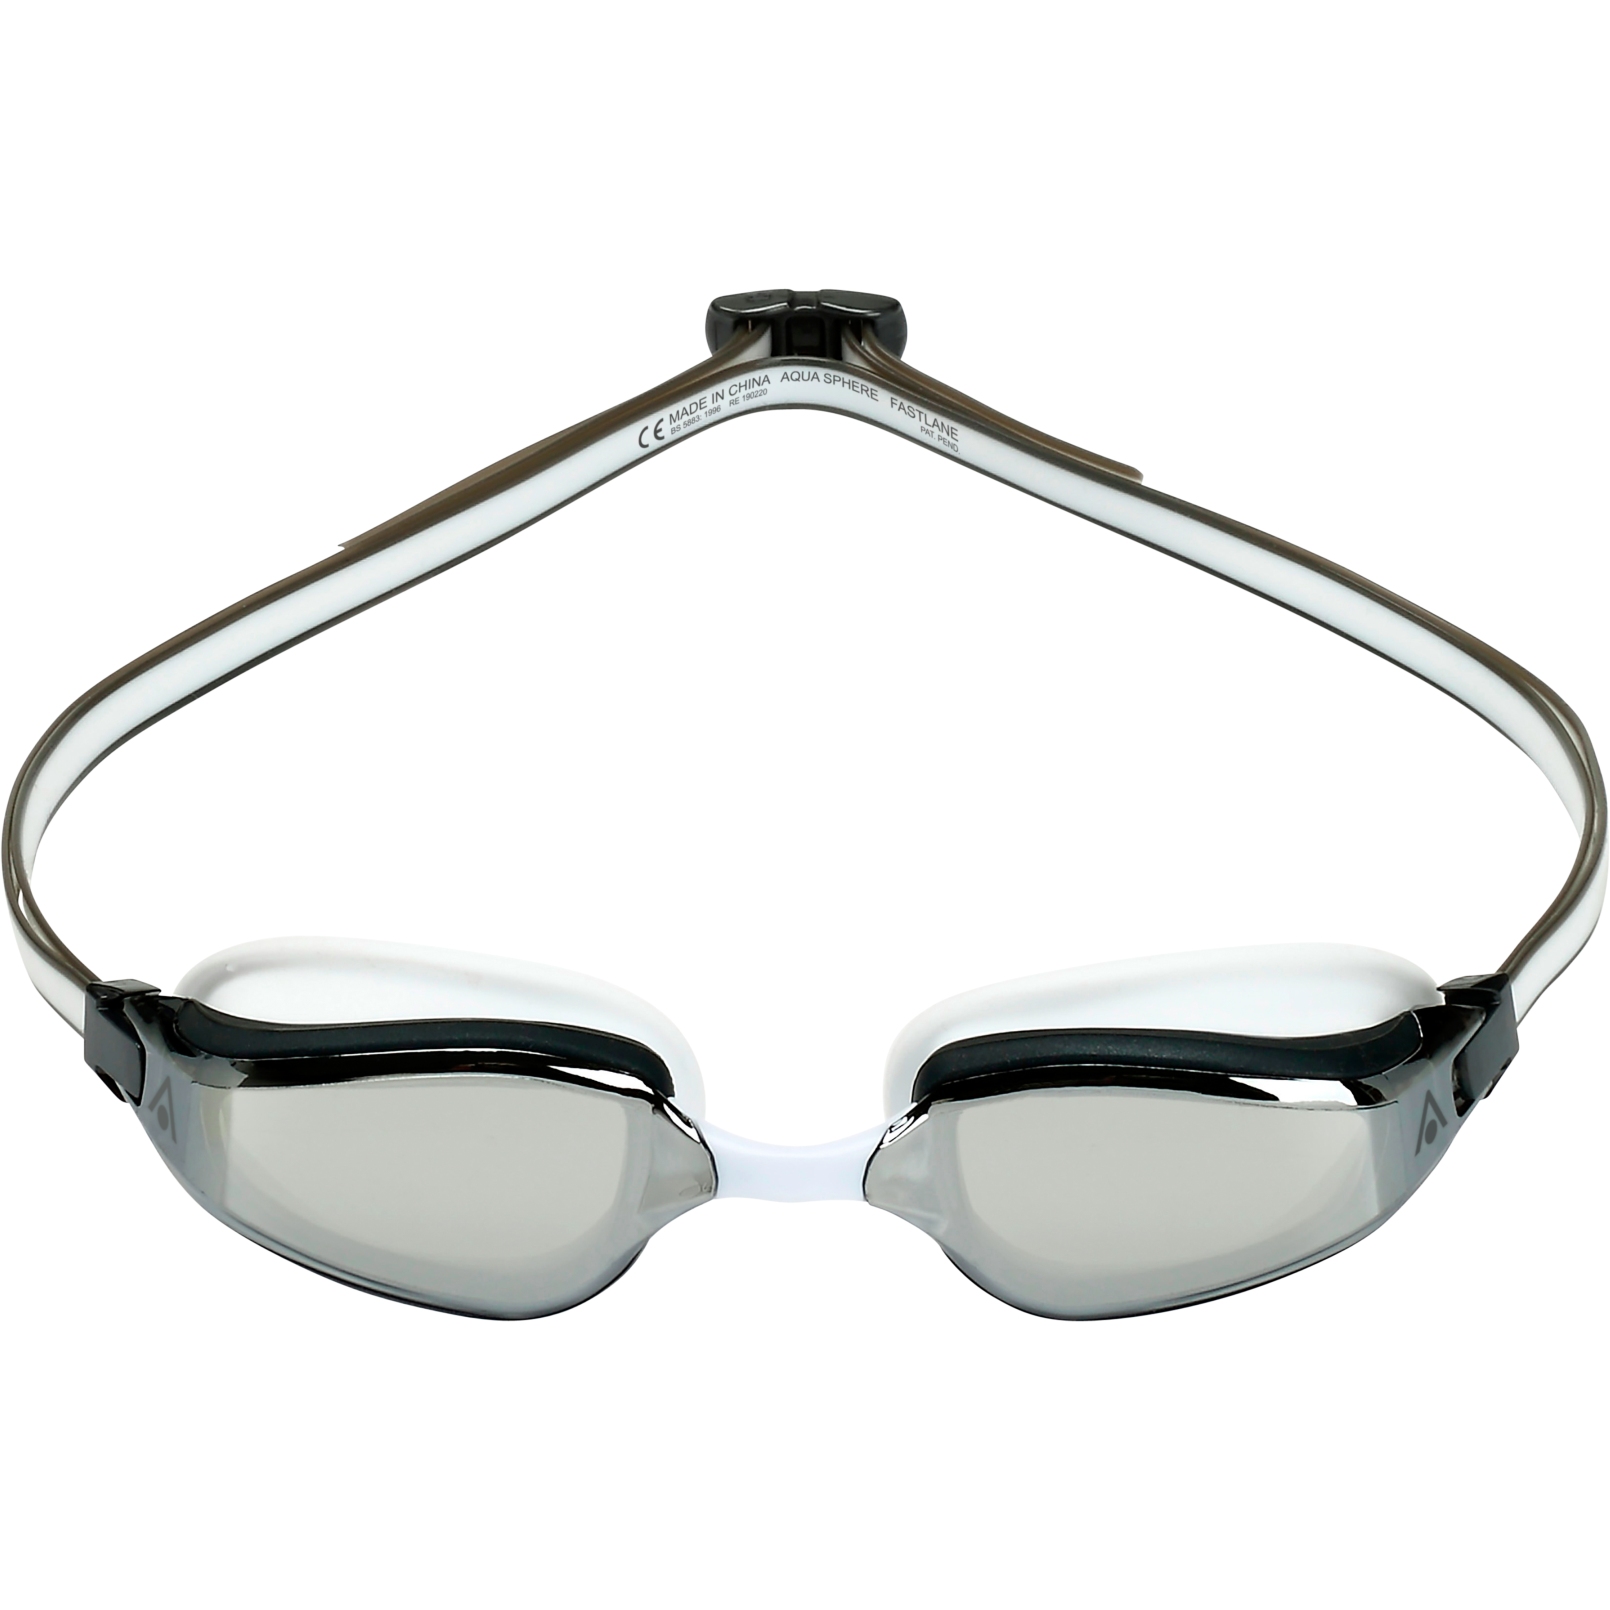 Productfoto van AQUASPHERE Fastlane Zwembril - Zilver Titaan gespiegeld - Wit/Grijs